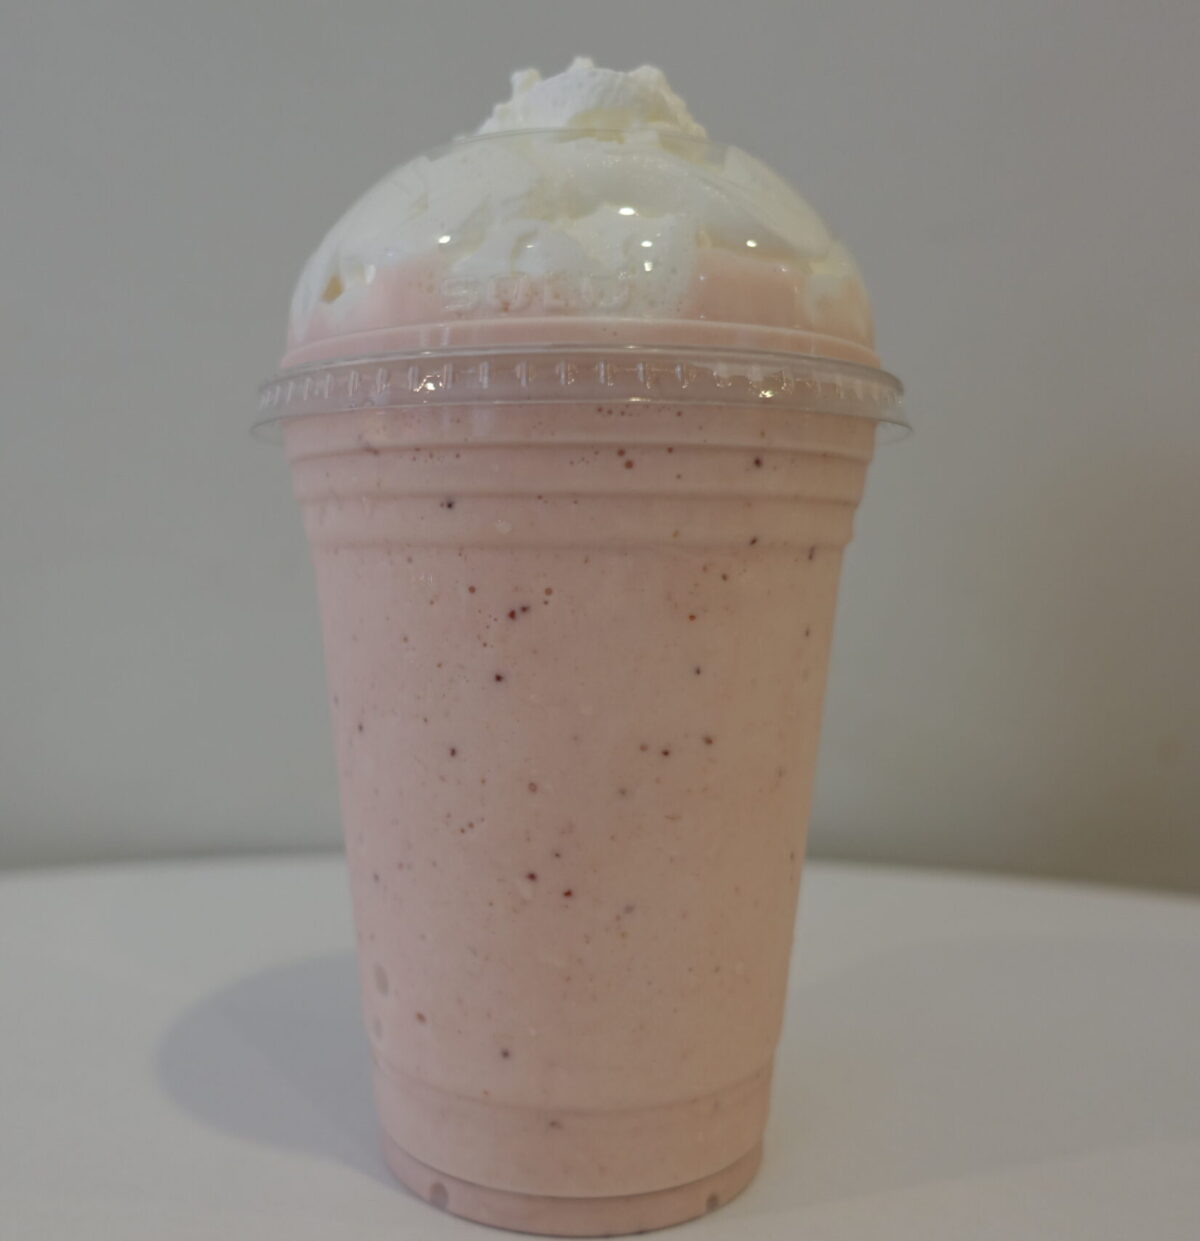 milkshake with whipped cream